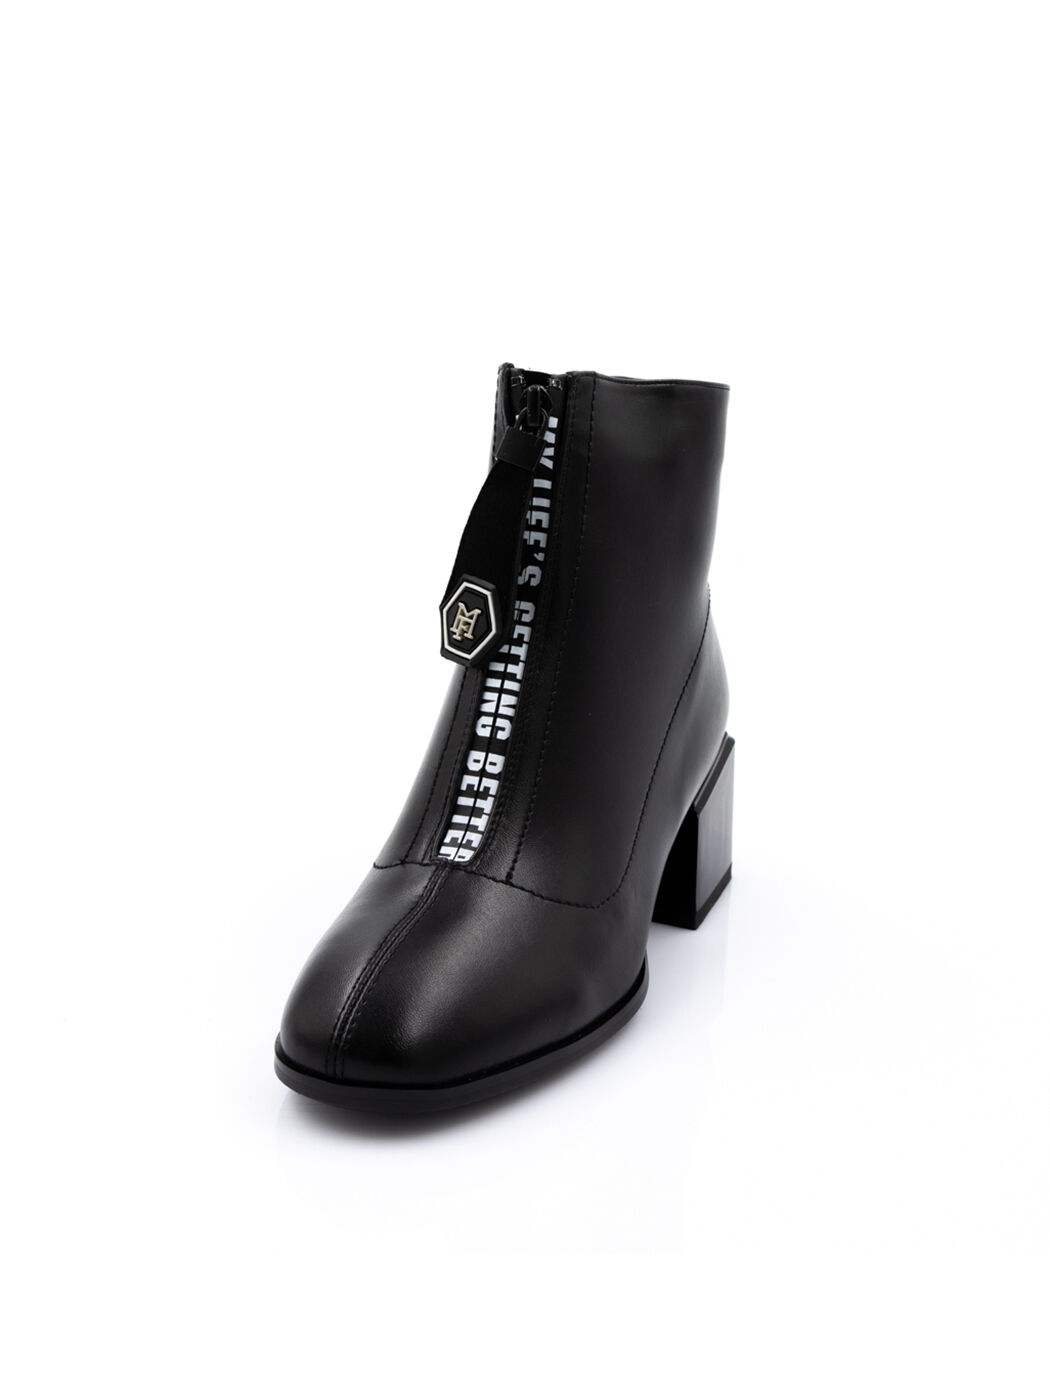 Ботинки женские черные экокожа каблук устойчивый демисезон вид 0